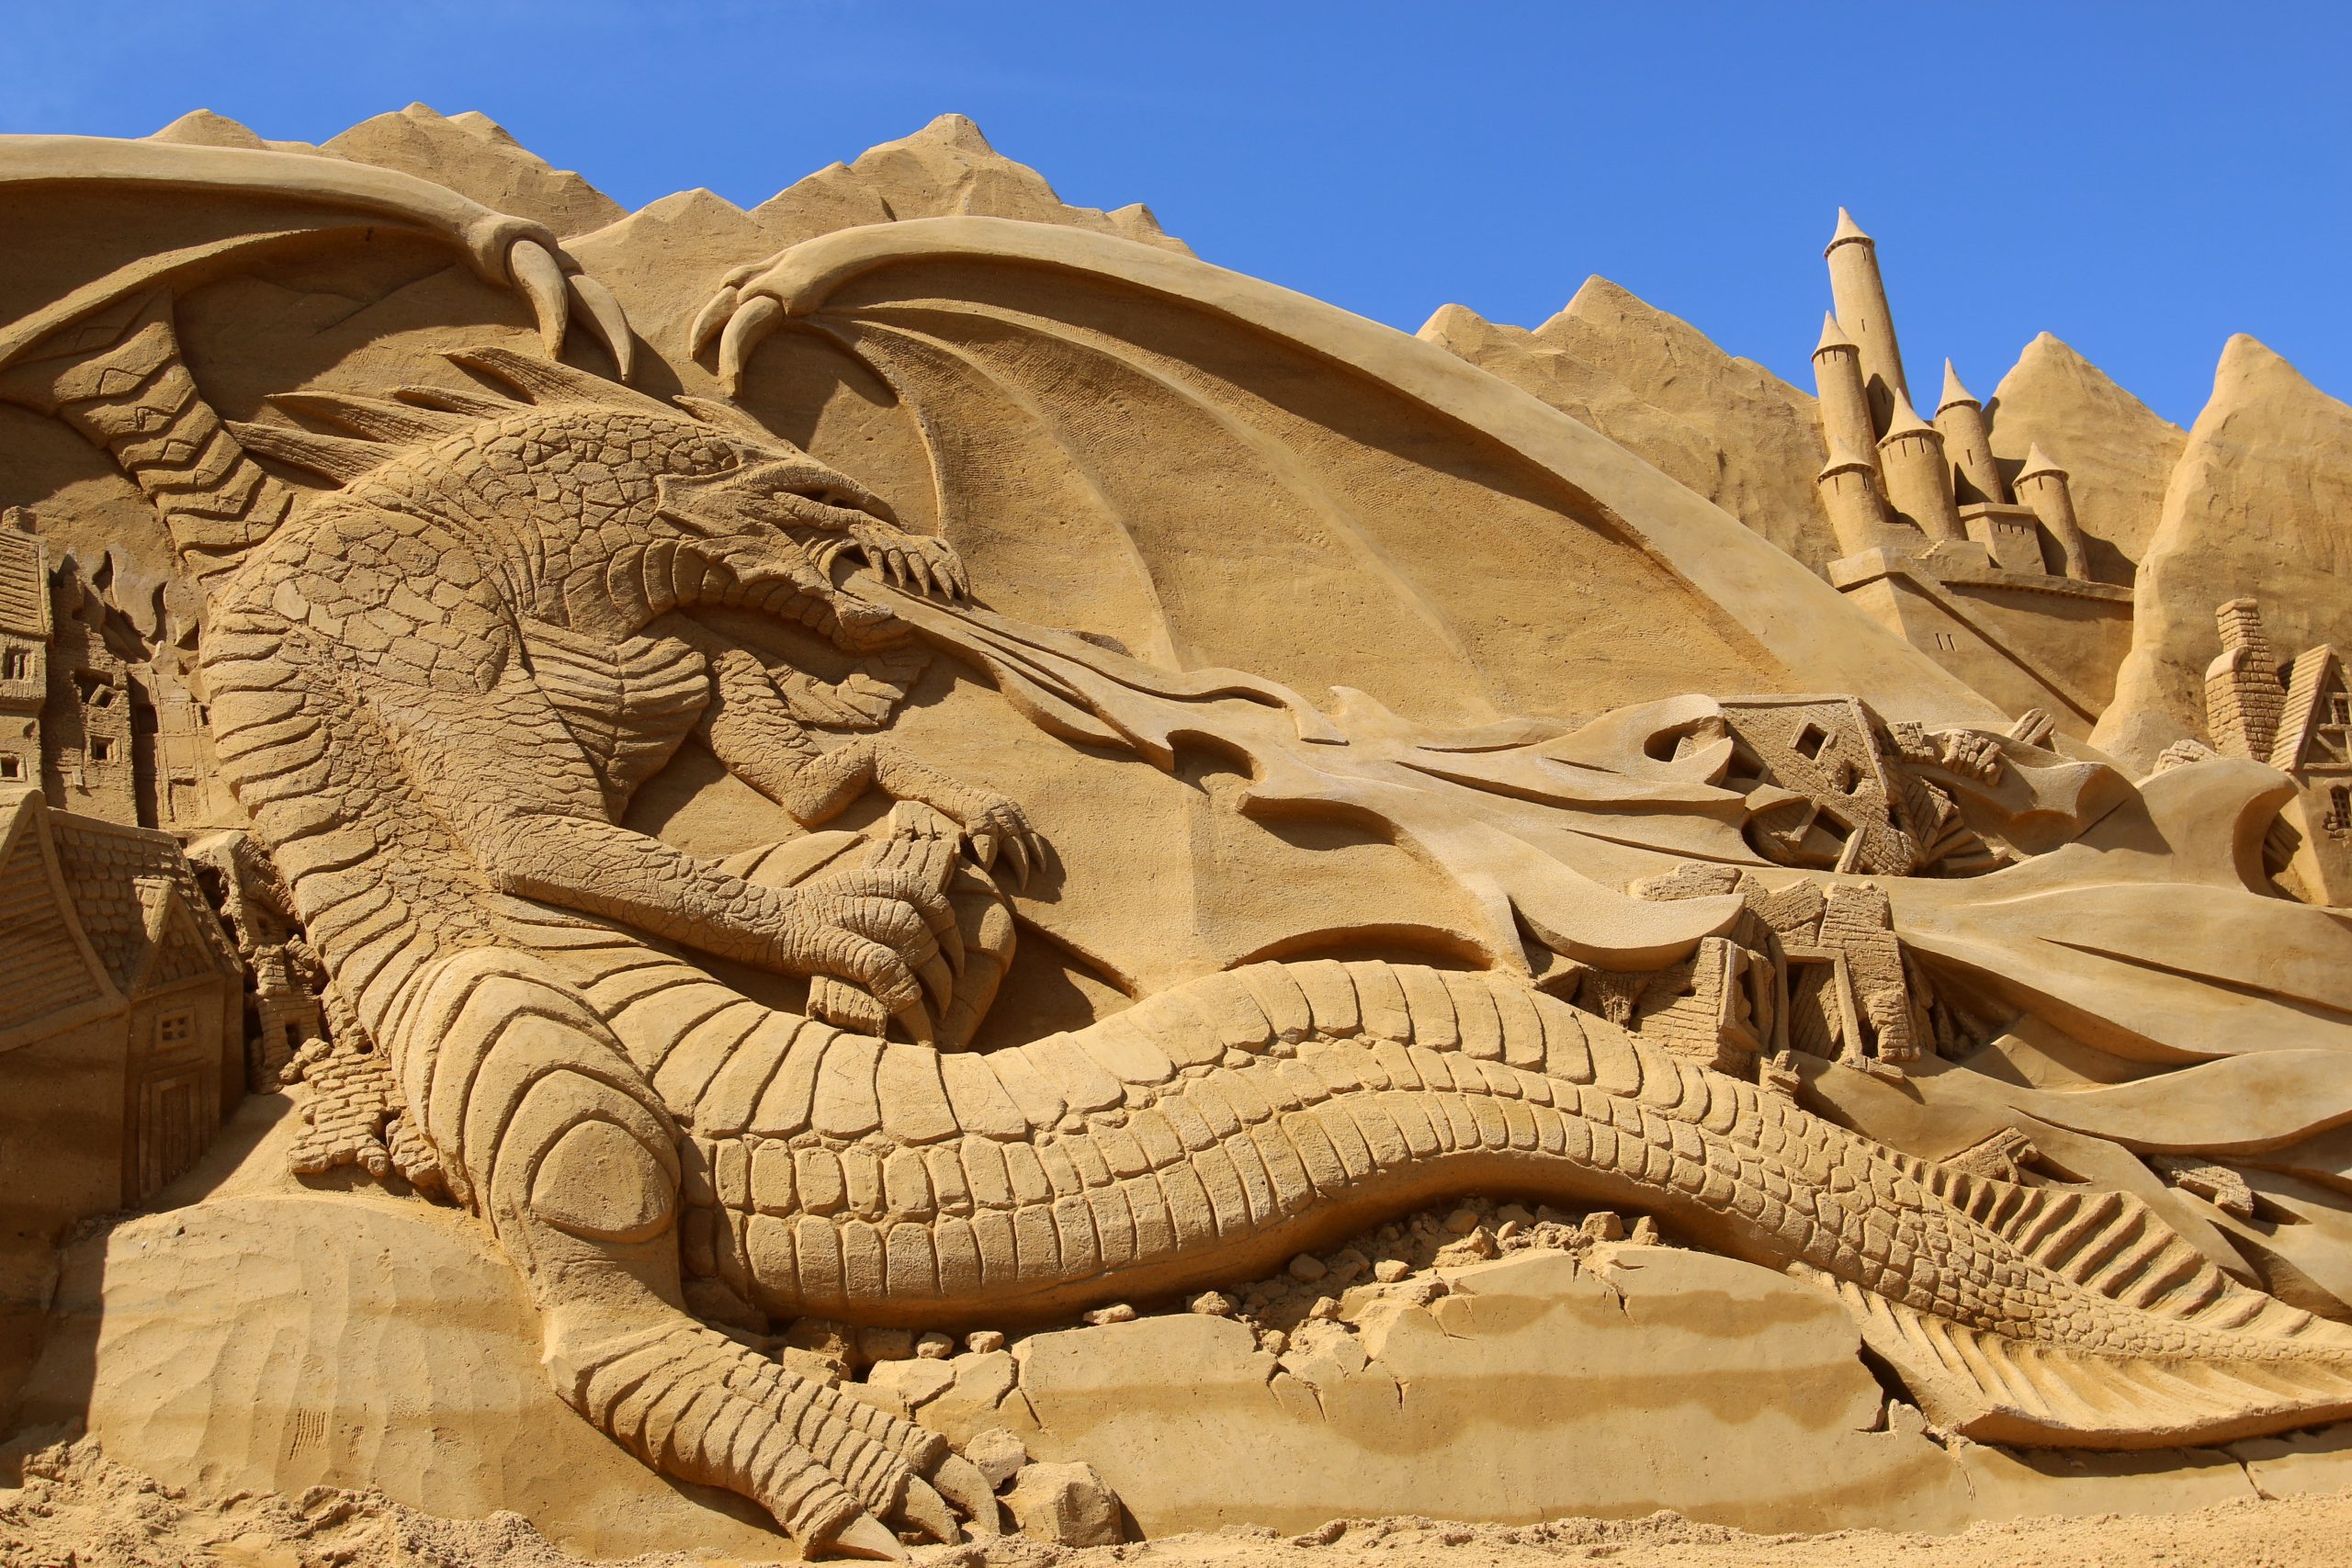 Sandskulptur af drage som spyr